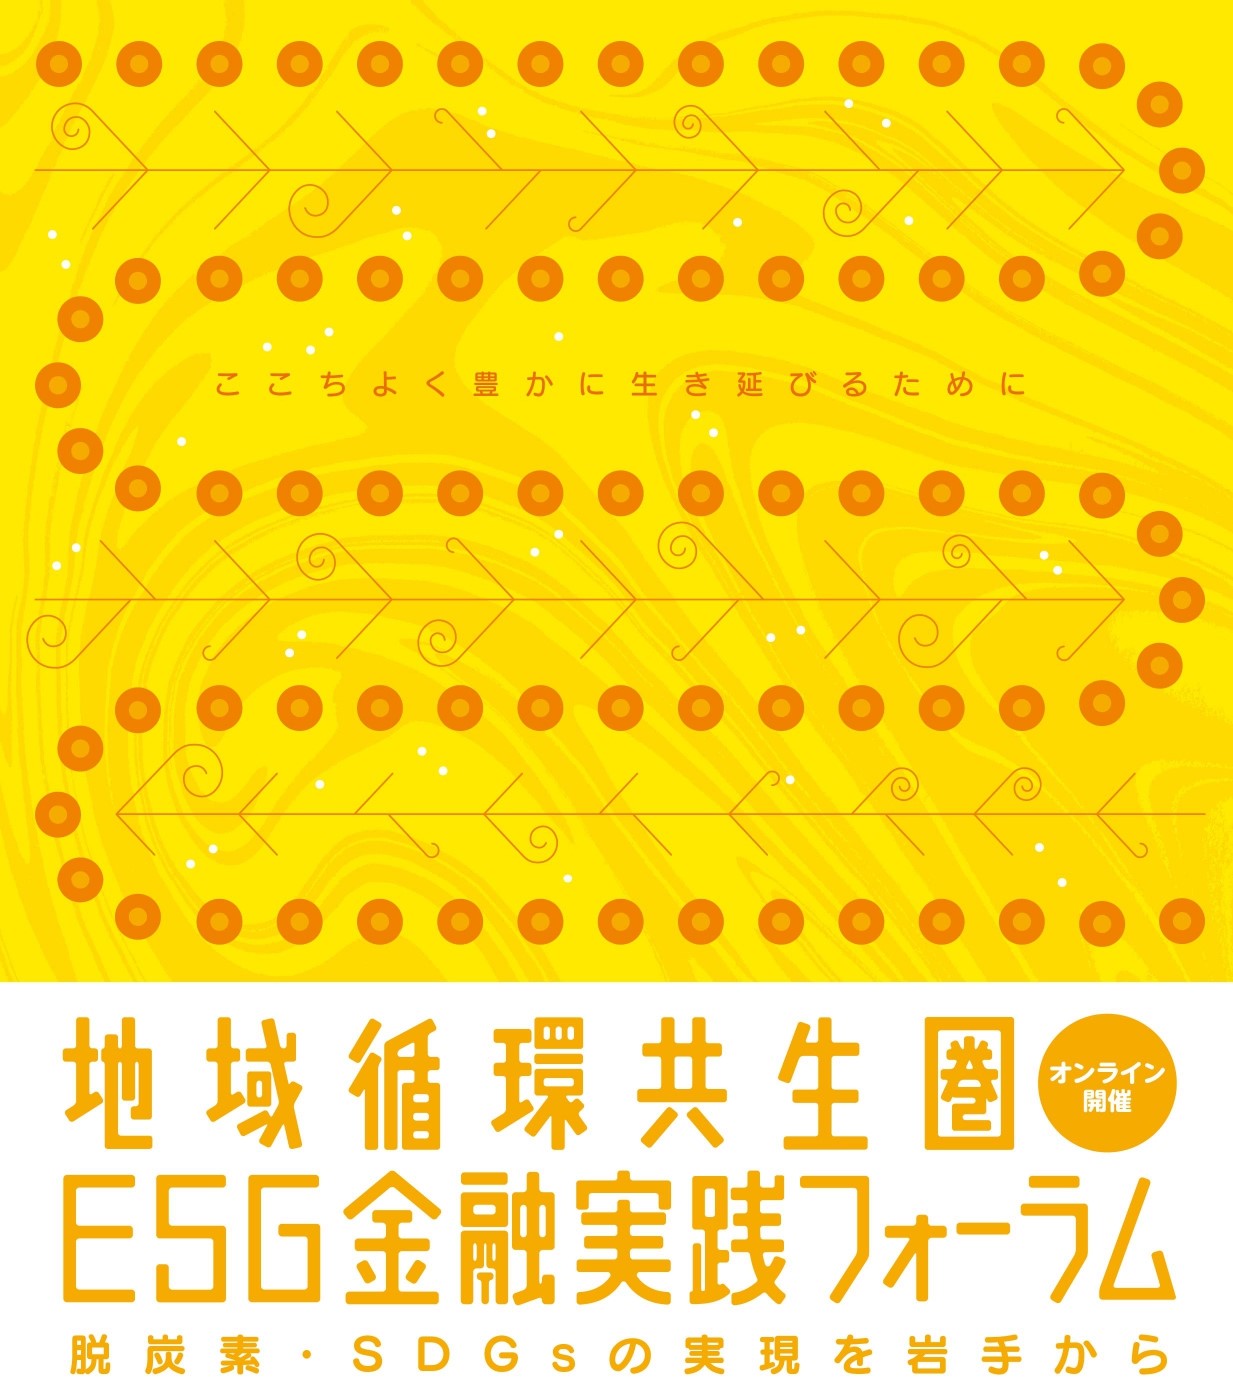 http://www.iwate-eco.jp/%E5%9C%B0%E5%9F%9F%E5%BE%AA%E7%92%B0%E5%85%B1%E7%94%9FA4_ESG%E9%87%91%E8%9E%8D_gm_page-0004.jpg